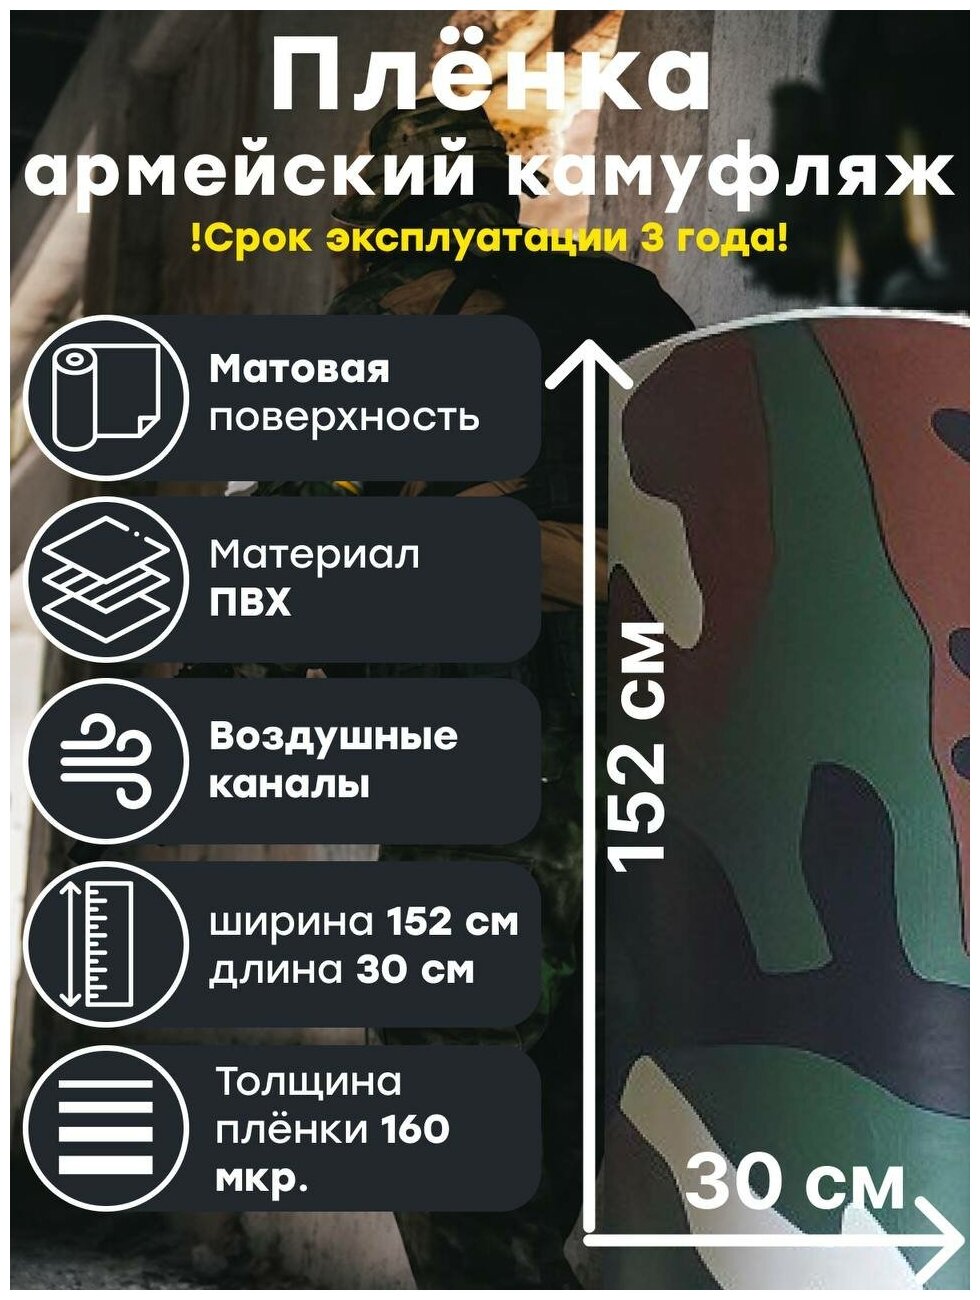 Виниловая самоклеящаяся пленка армейский камуфляж (1,52 x 0,3 м.)